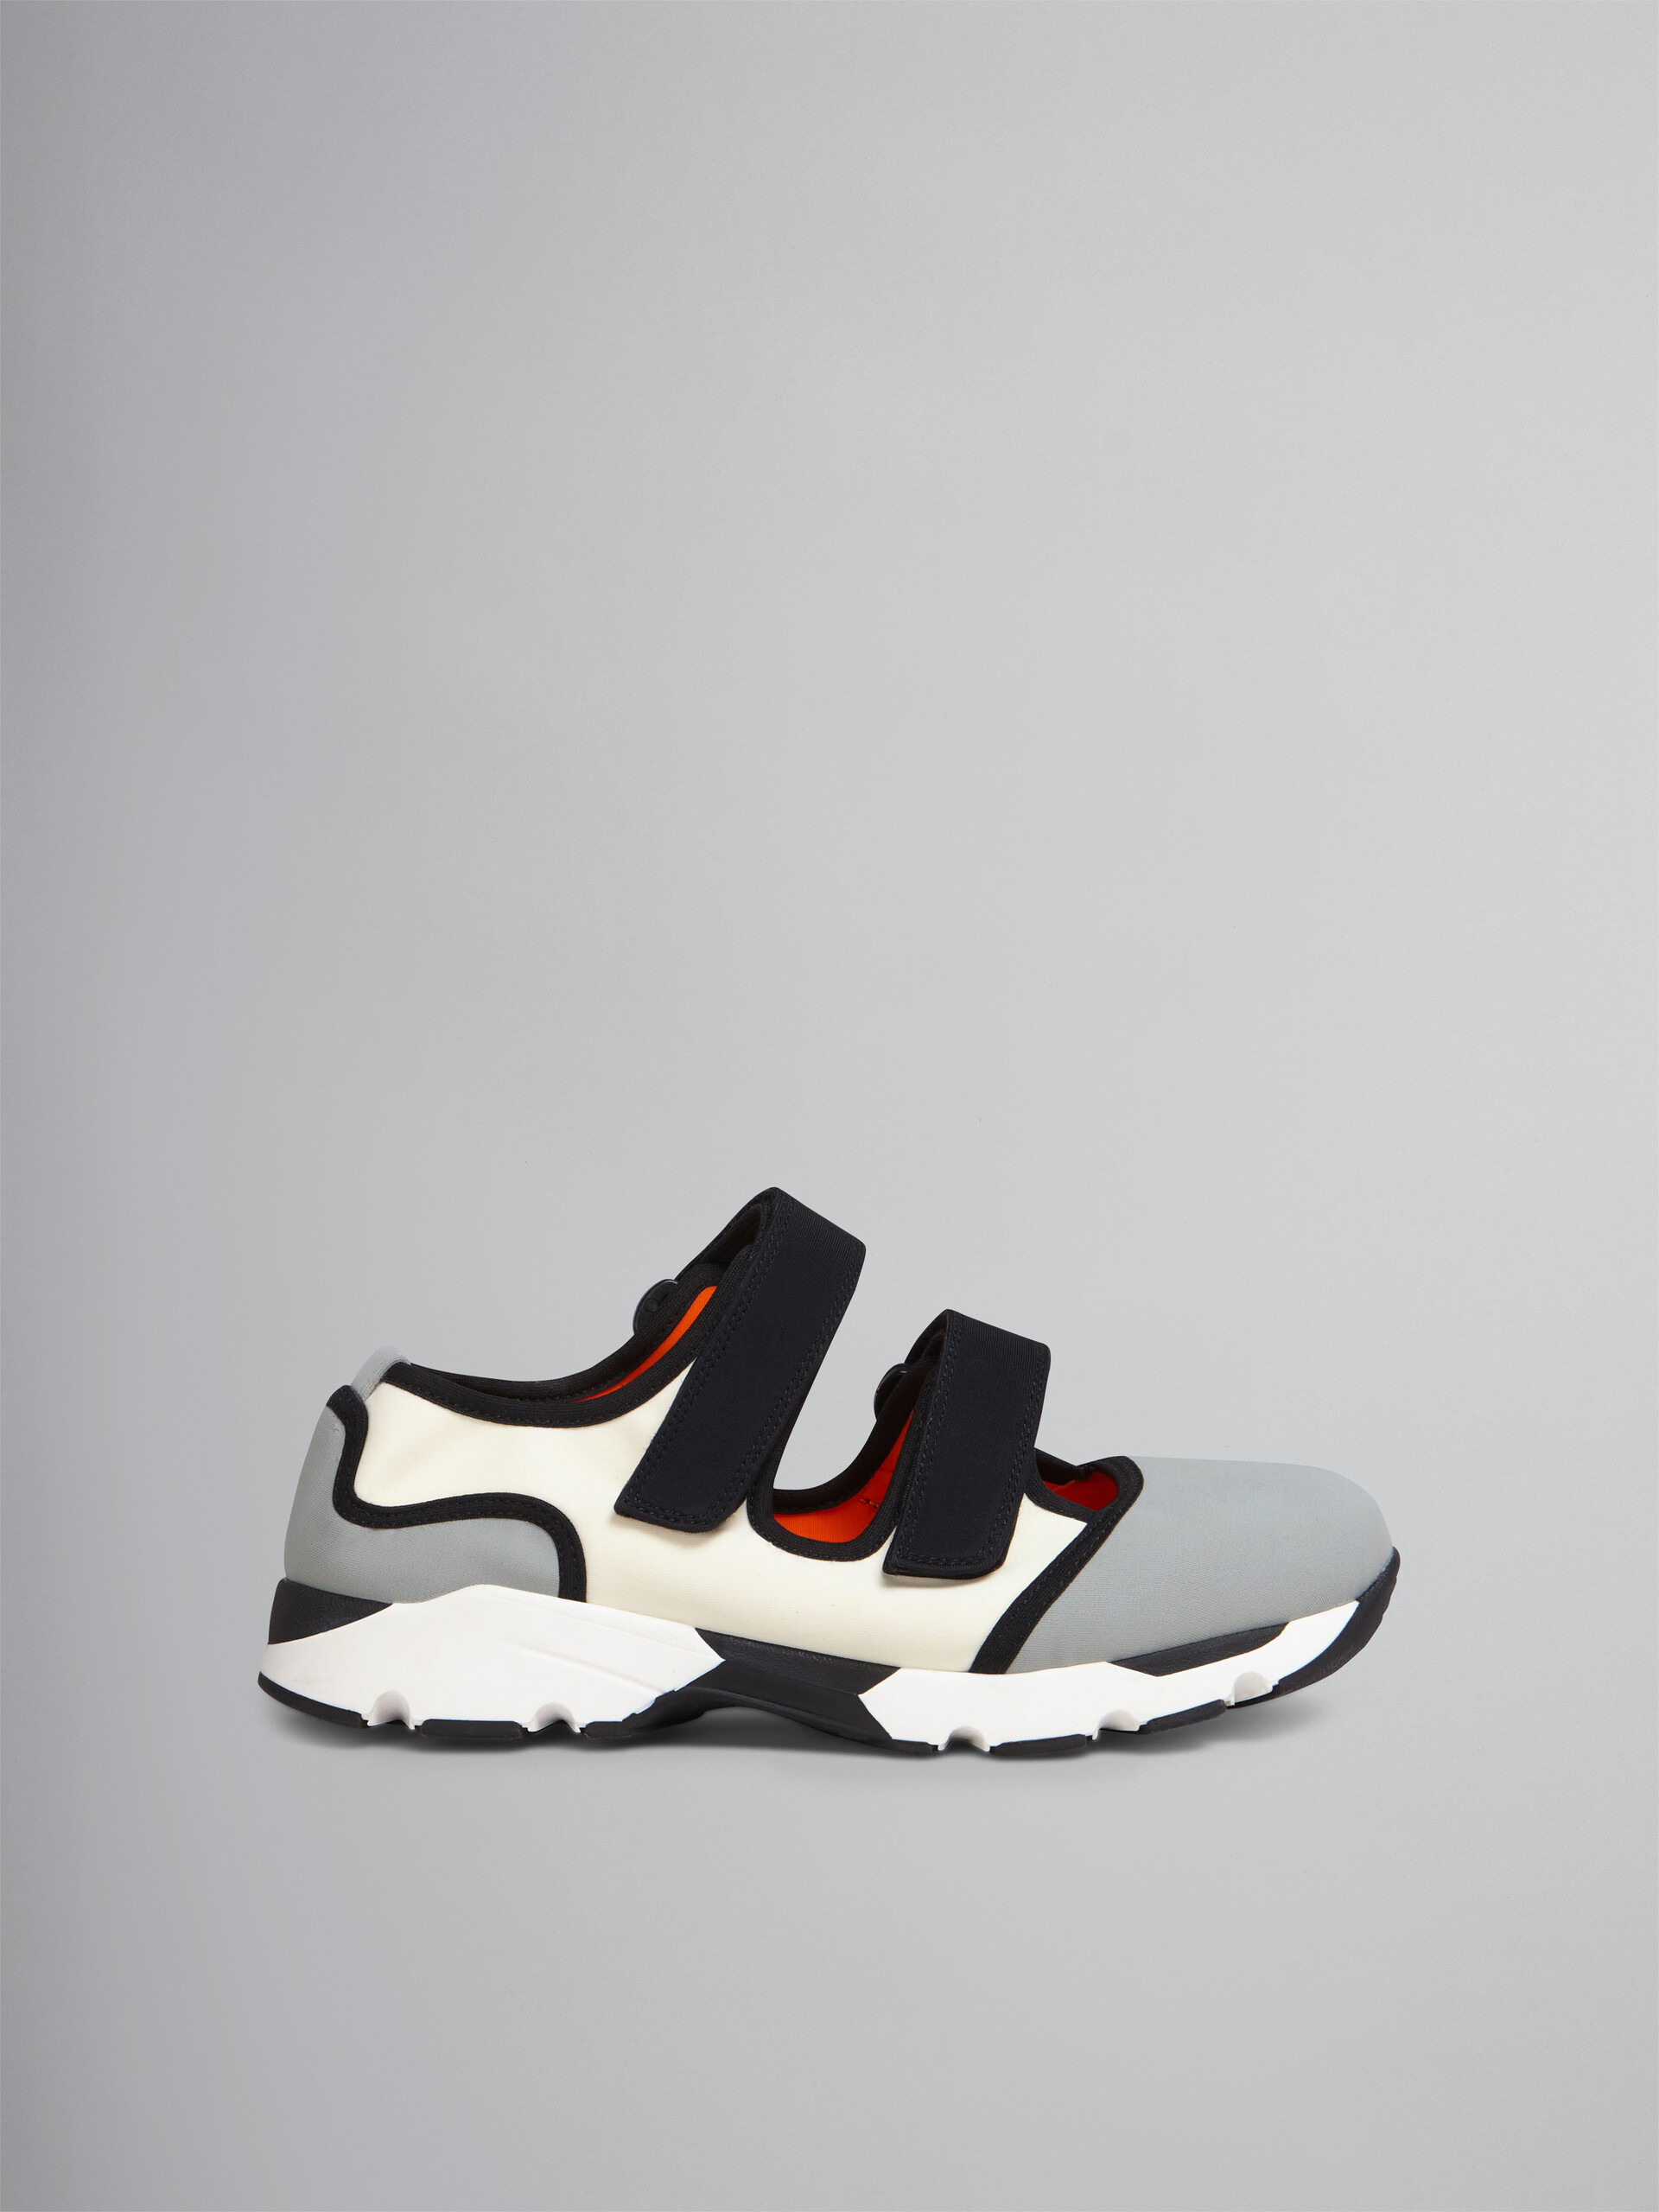 Sneaker in tessuto tecnico con chiusure a strappo grigio e bianco - Sneakers - Image 1